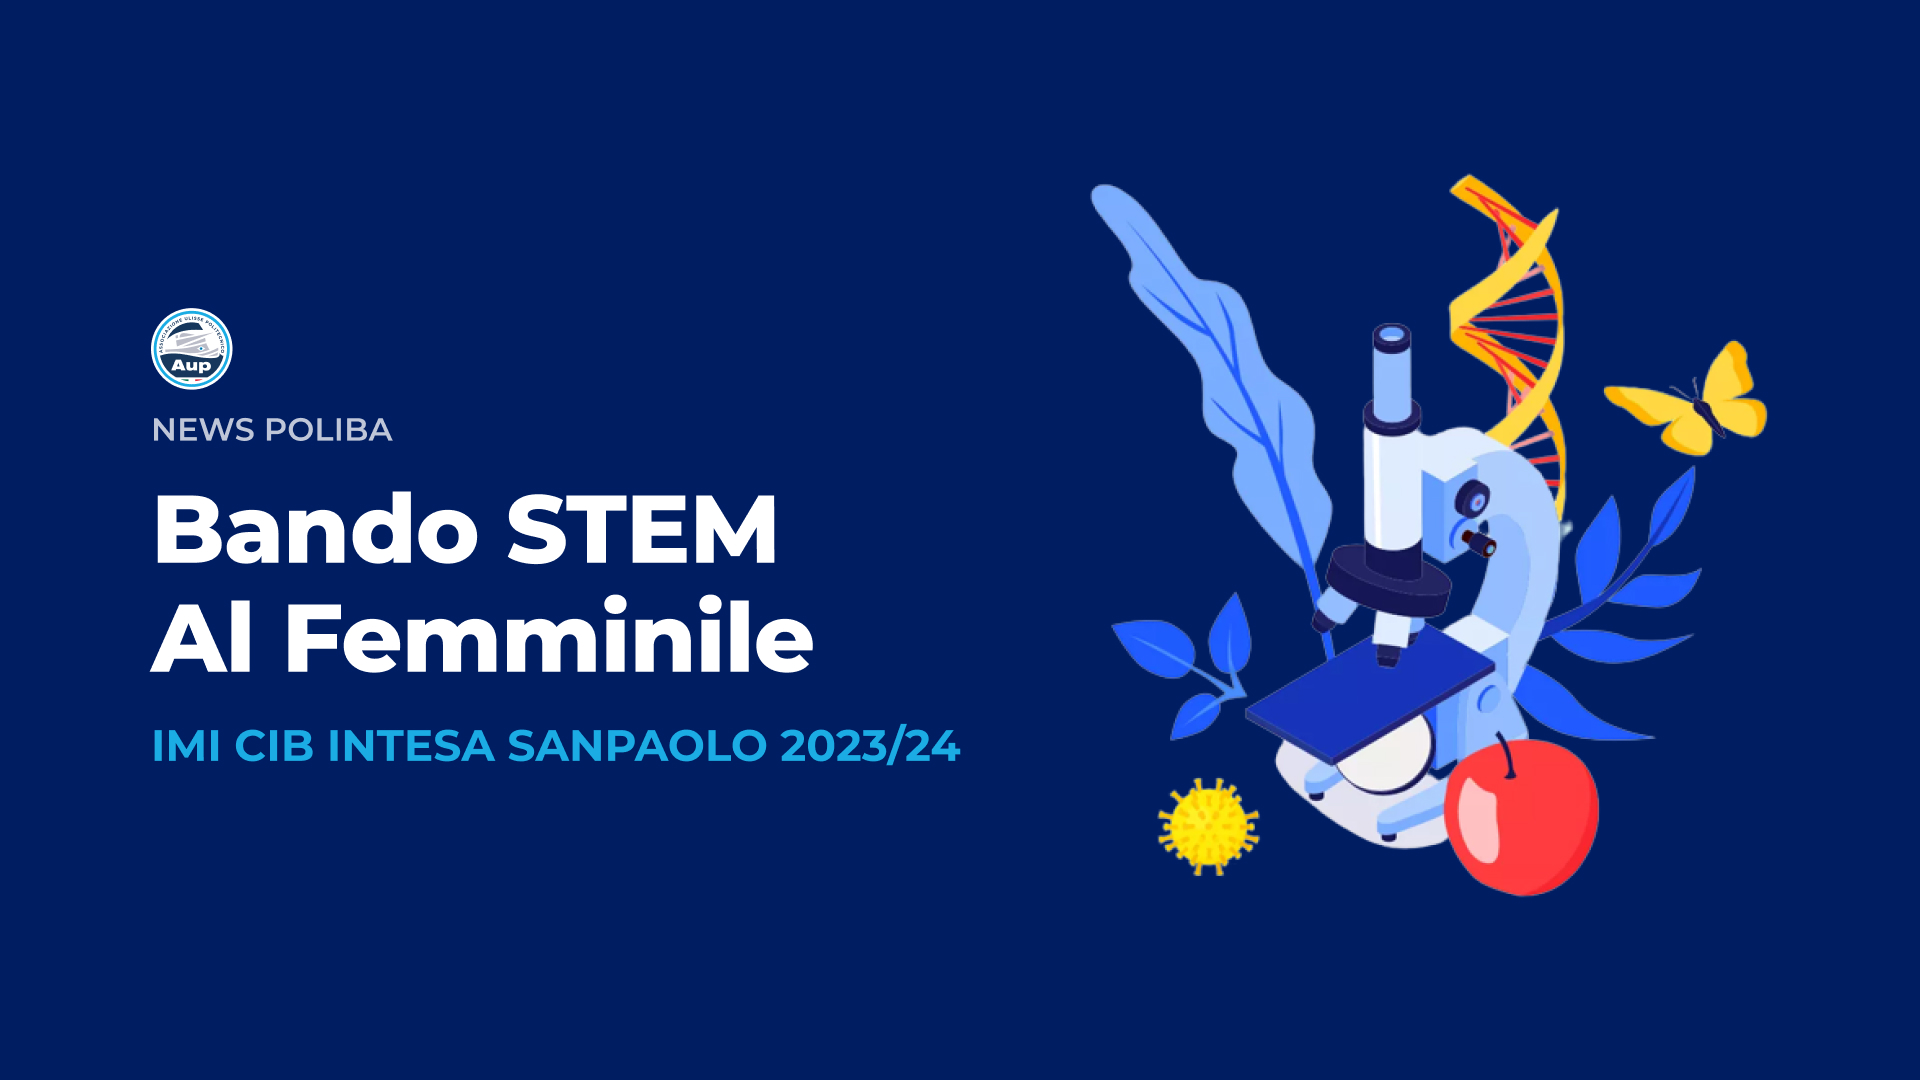 Bando STEM al Femminile Finanziata da IMI CIB Intesa Sanpaolo 2023/24